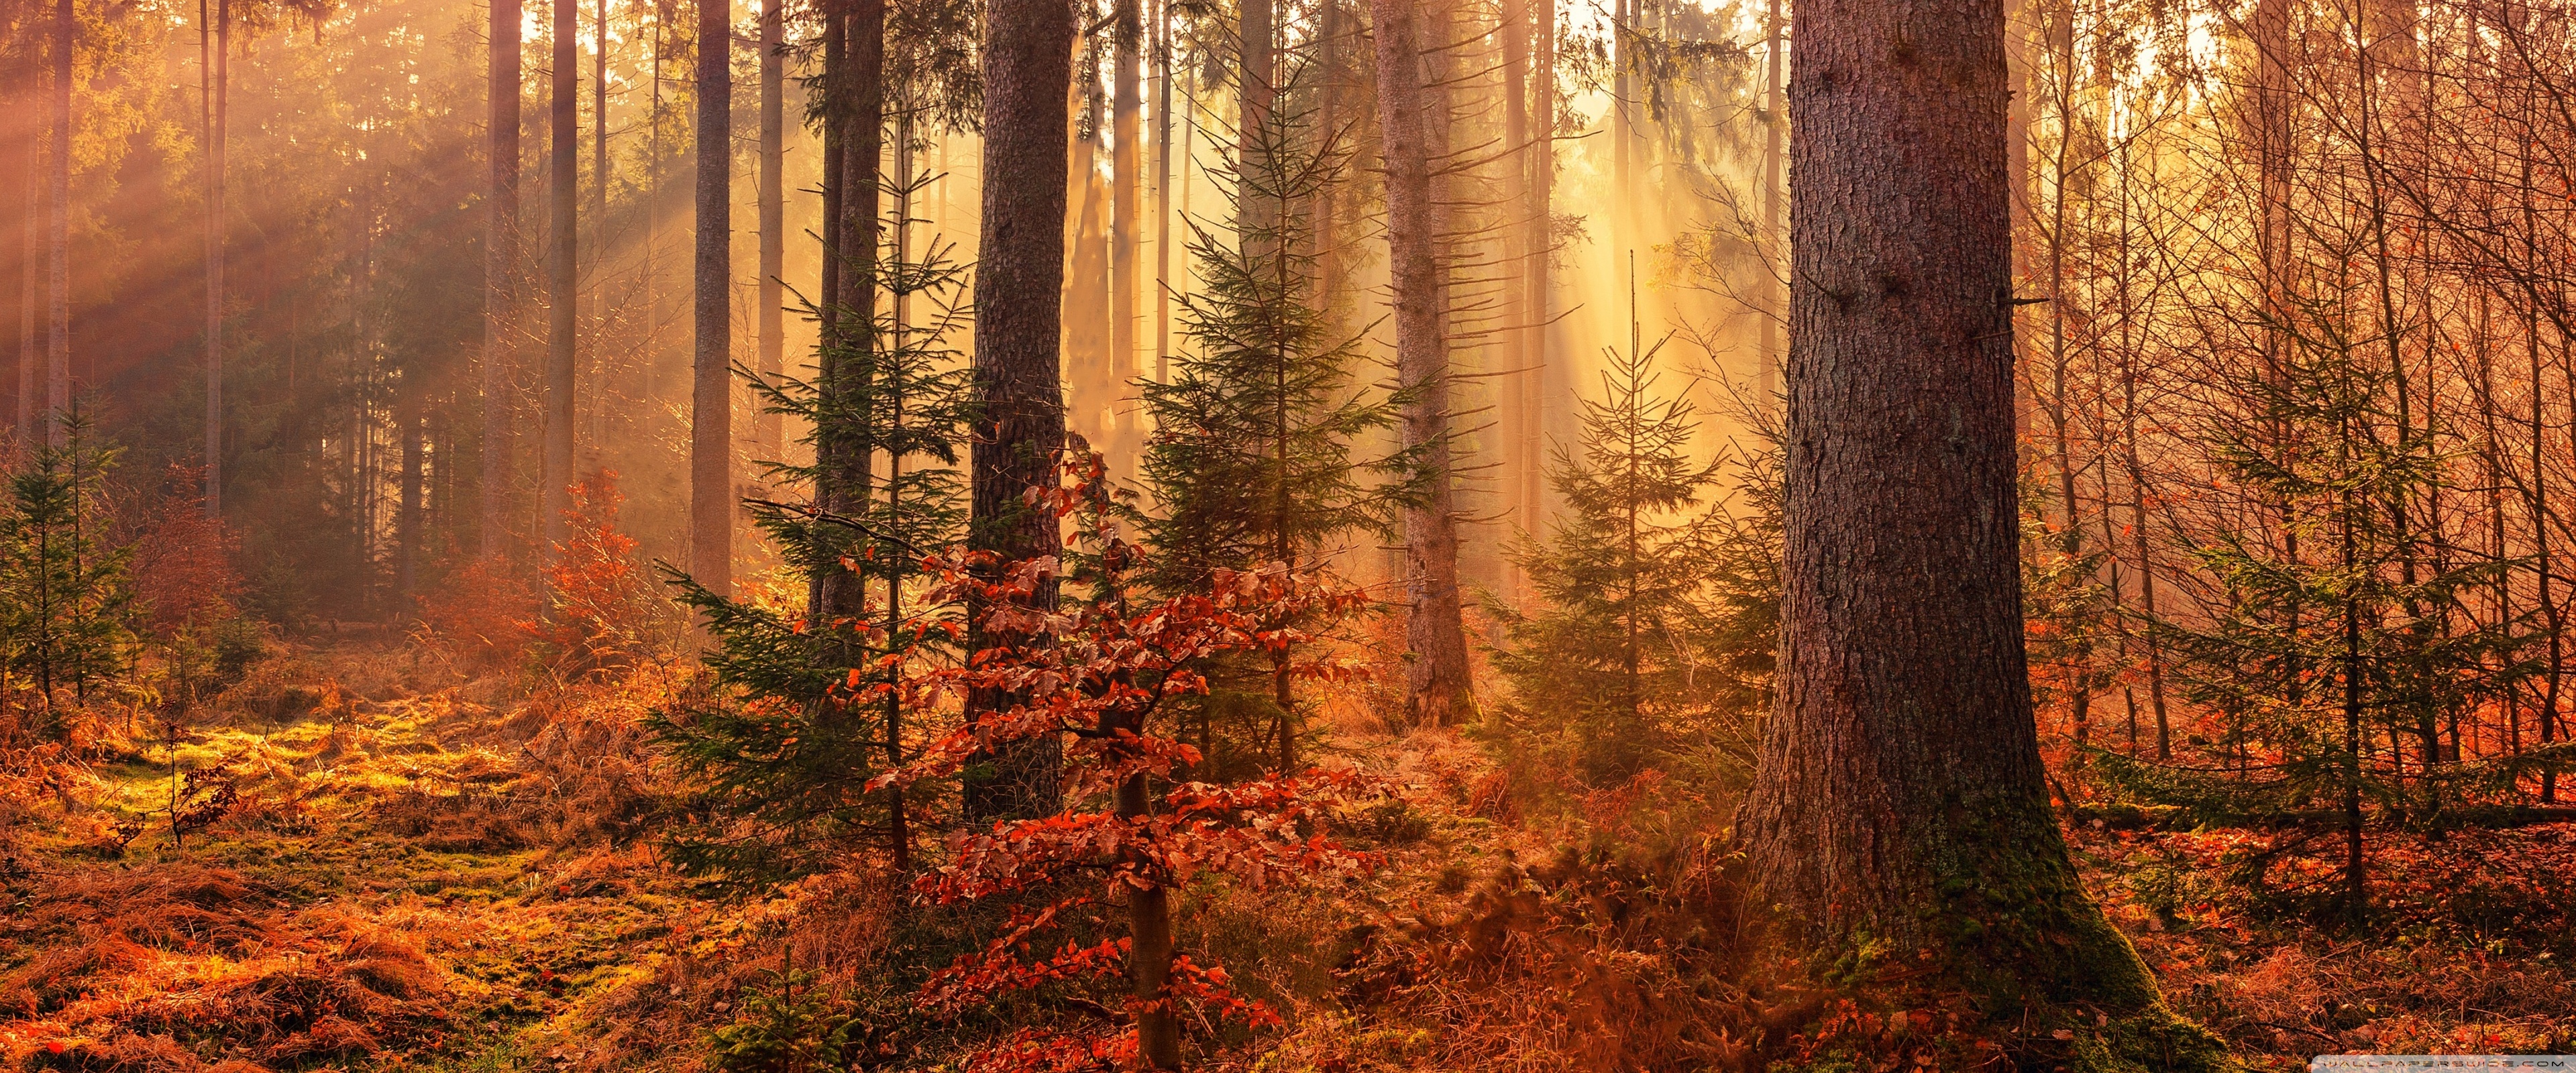 Autumn Forest - HD Wallpaper 